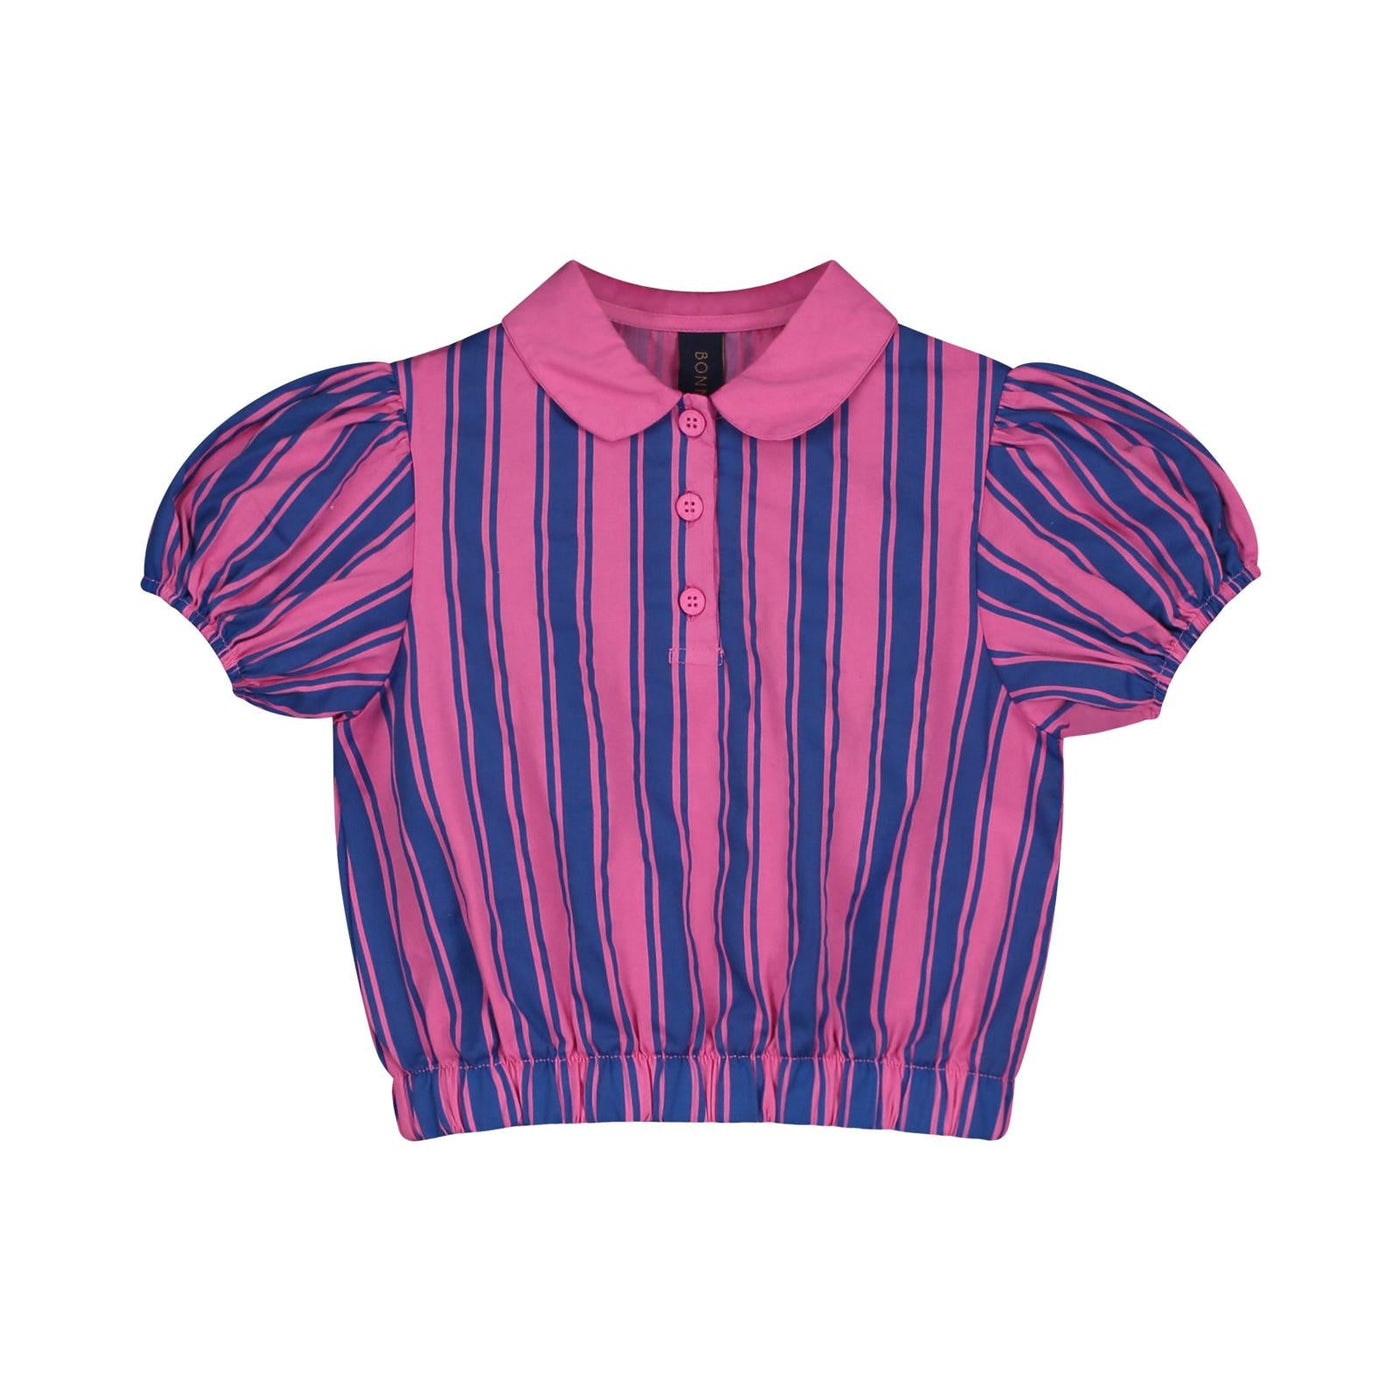 Bonmot Shirt allover vertical stripes